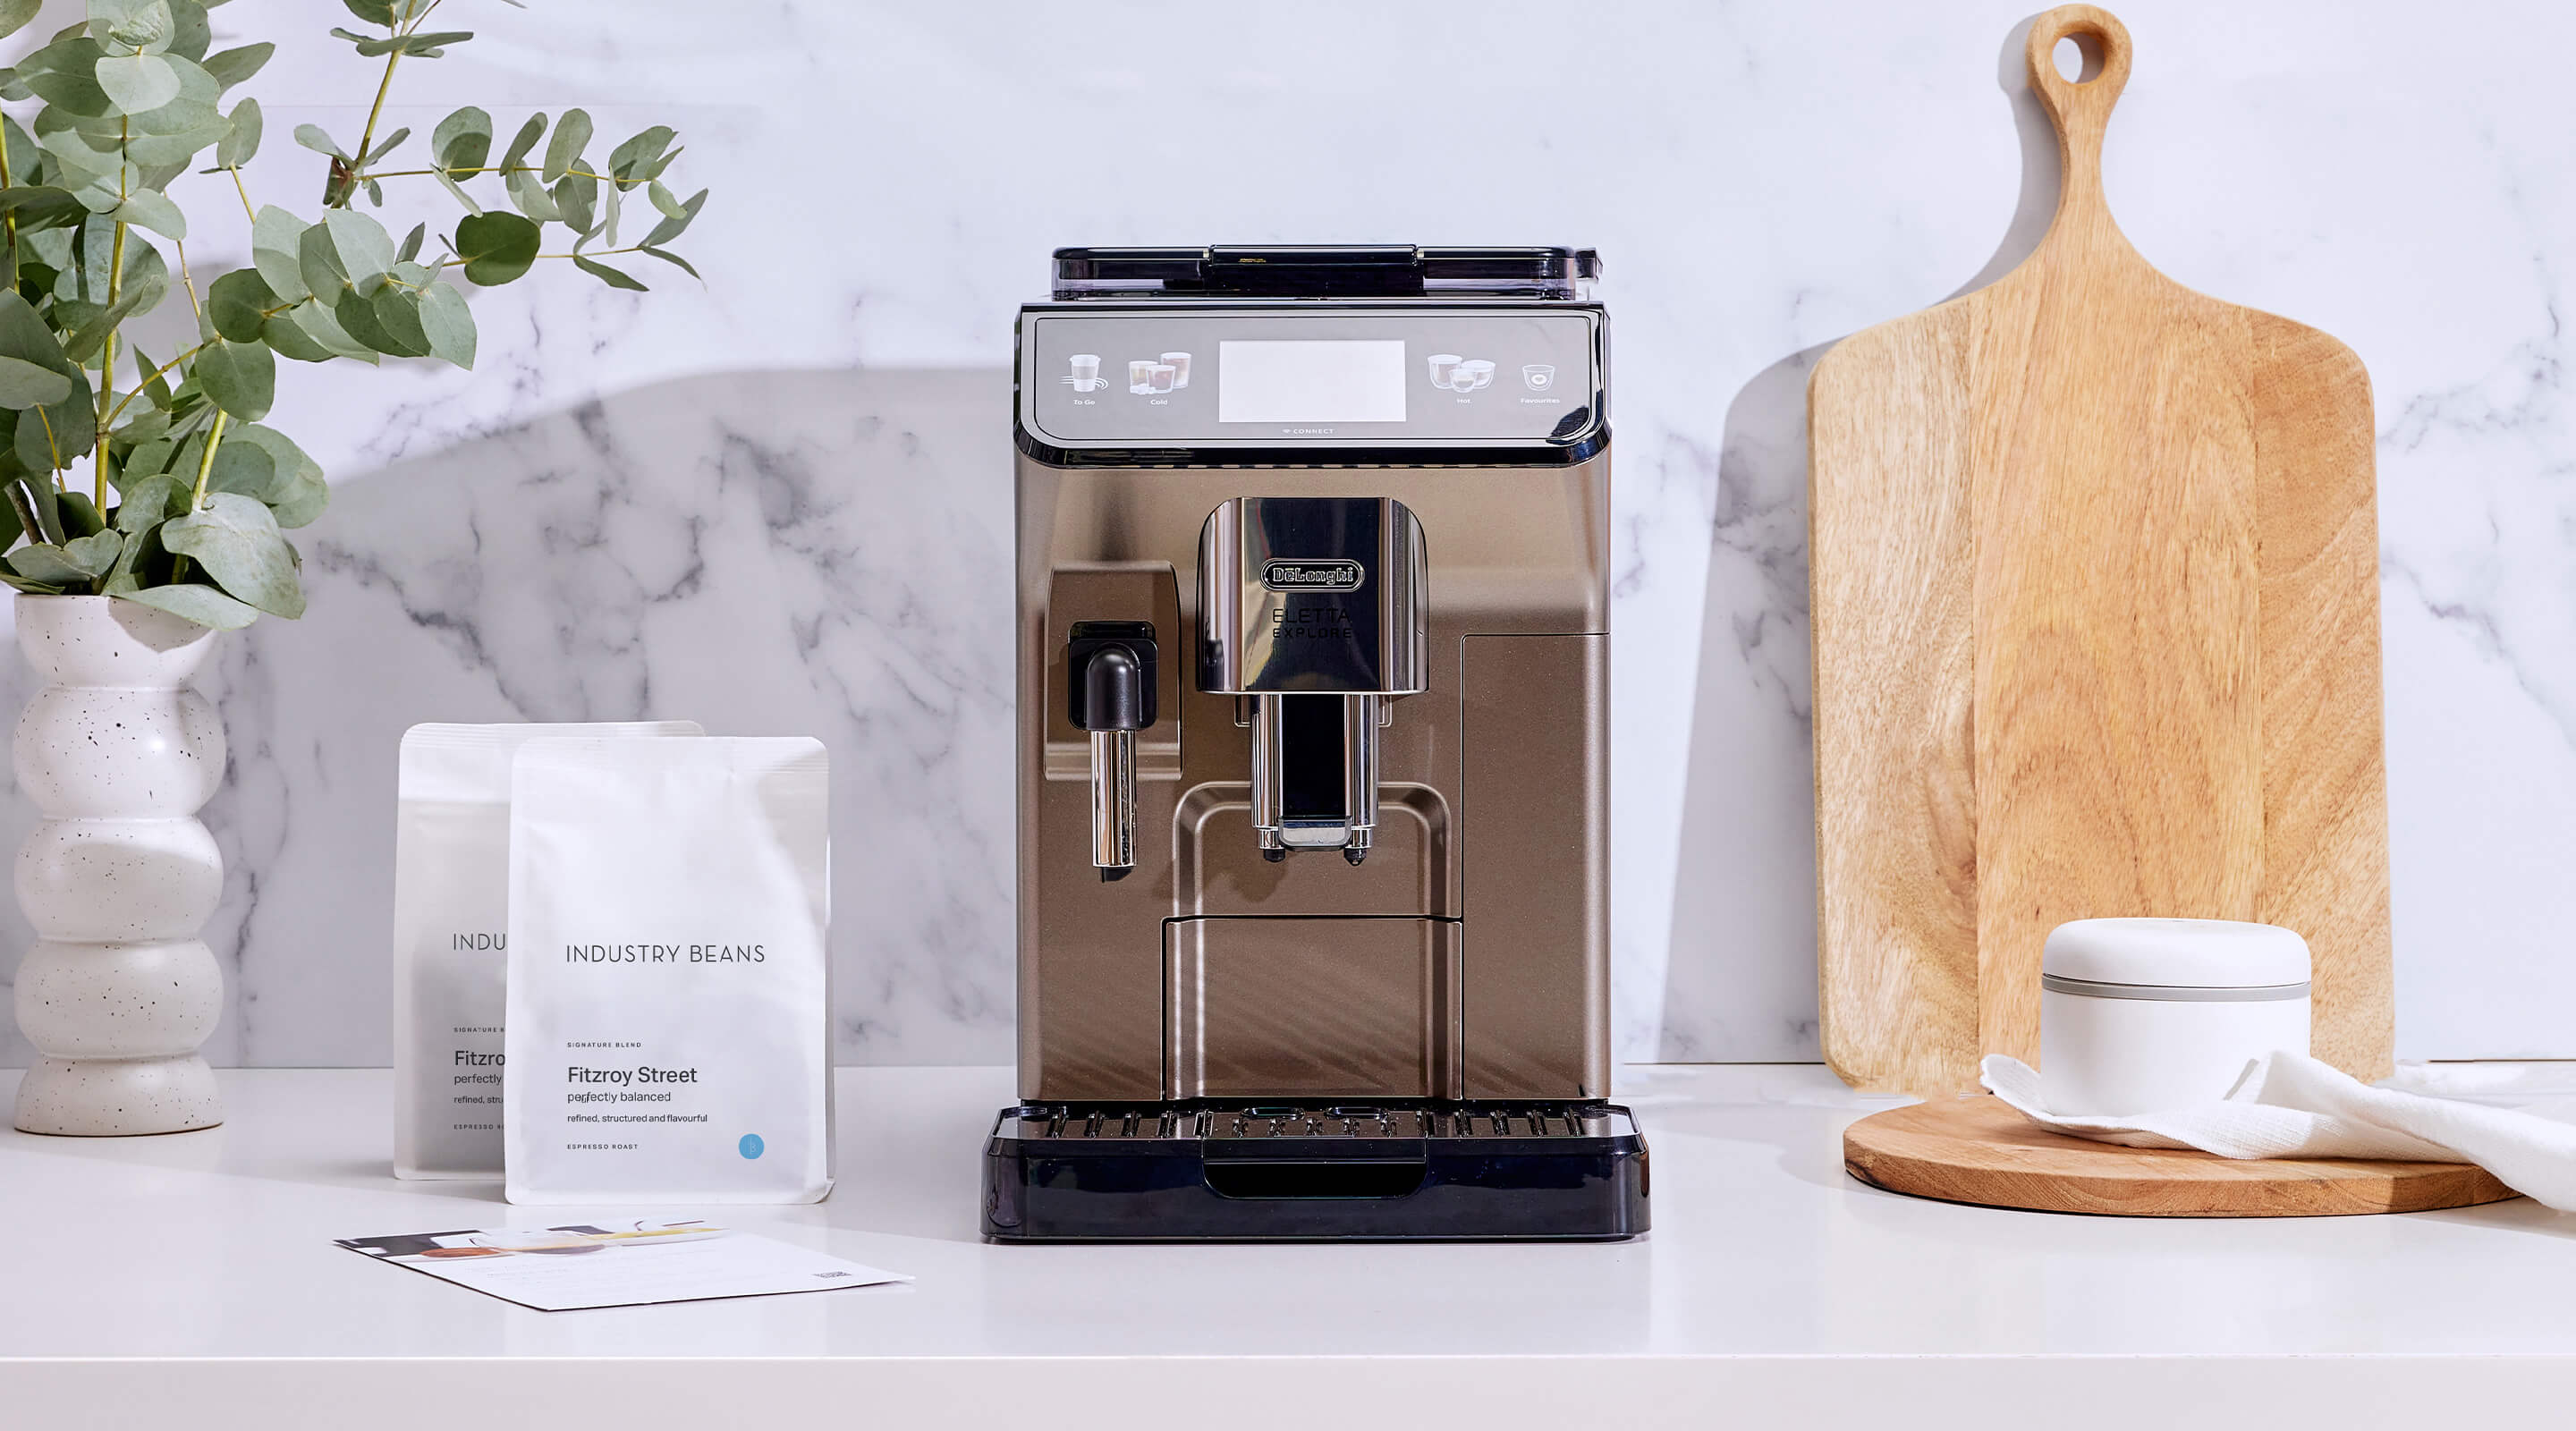 De'longhi Eletta Explore Automatic Coffee Machine with Cold Brew